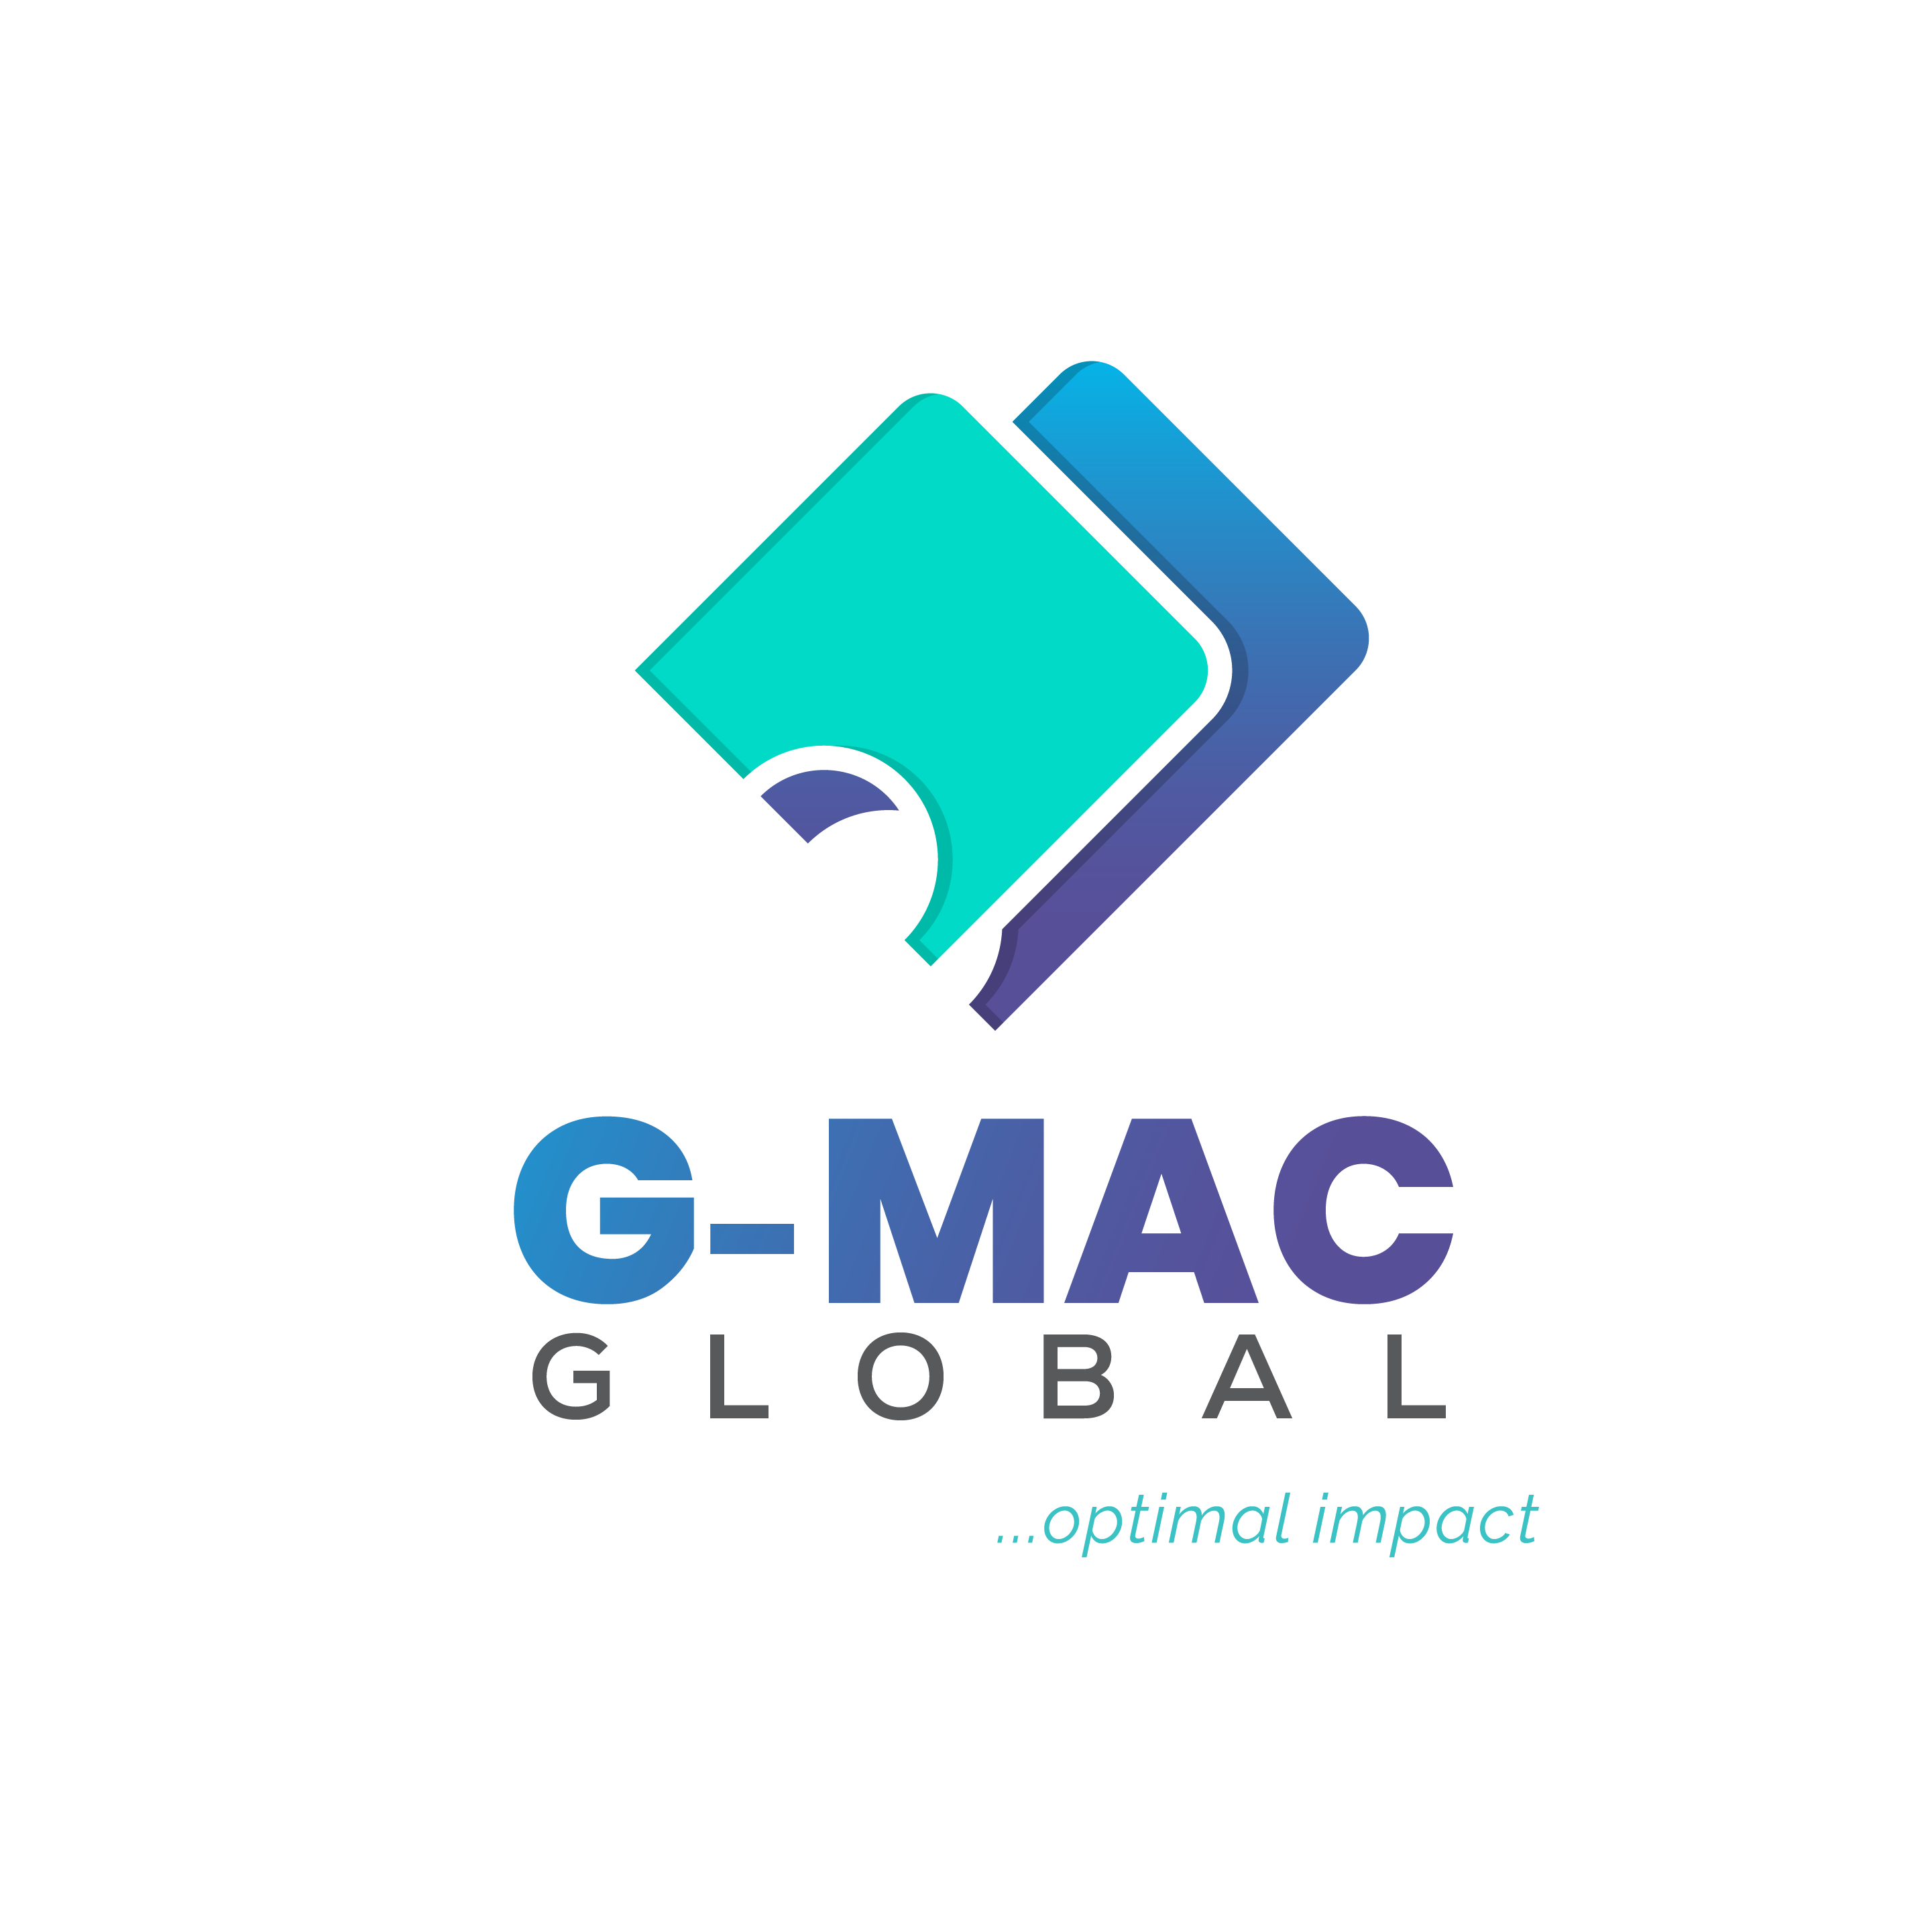 GMAC GLOBAL